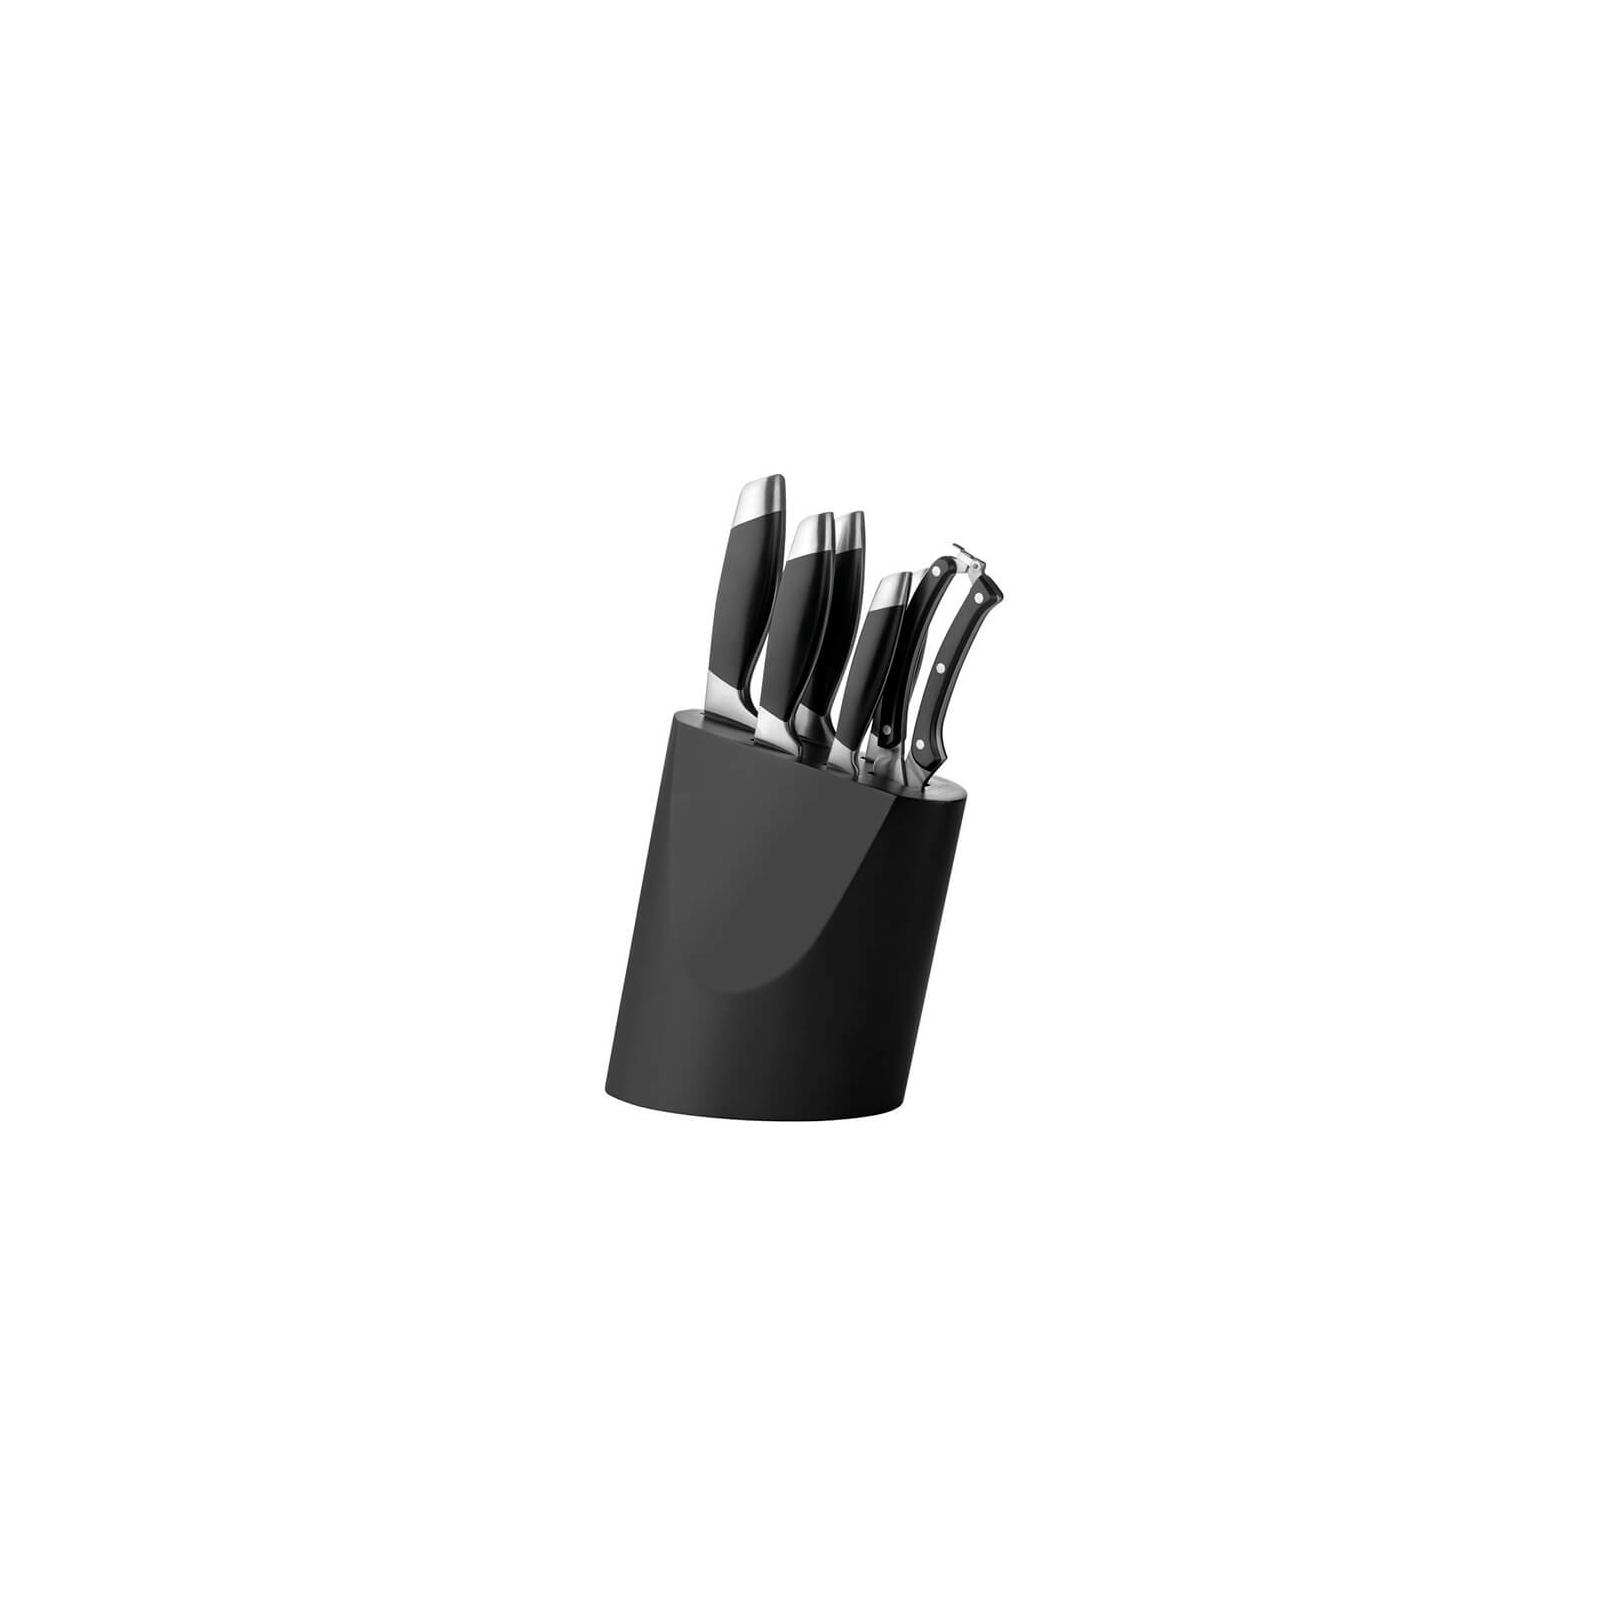 Набір ножів BergHOFF Essentials Coda с подставкой 7 предметов (1307140)